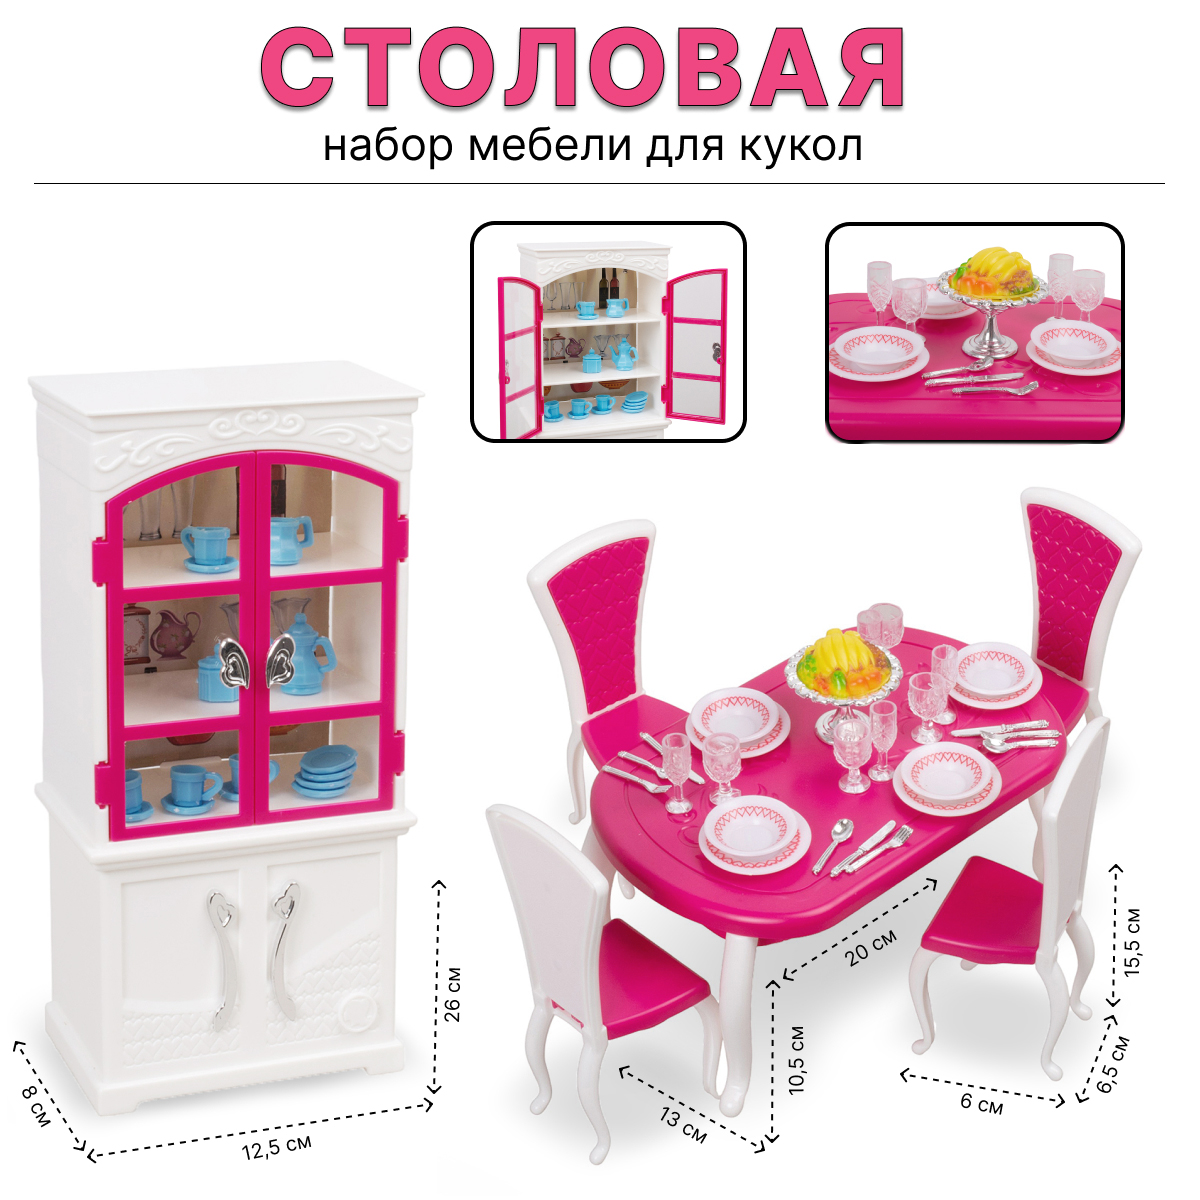 Игровой набор Tongde мебели для кукол 3012 Столовая мебель для кукол астра металлический стол с зонтиком и двумя стульями kb4243